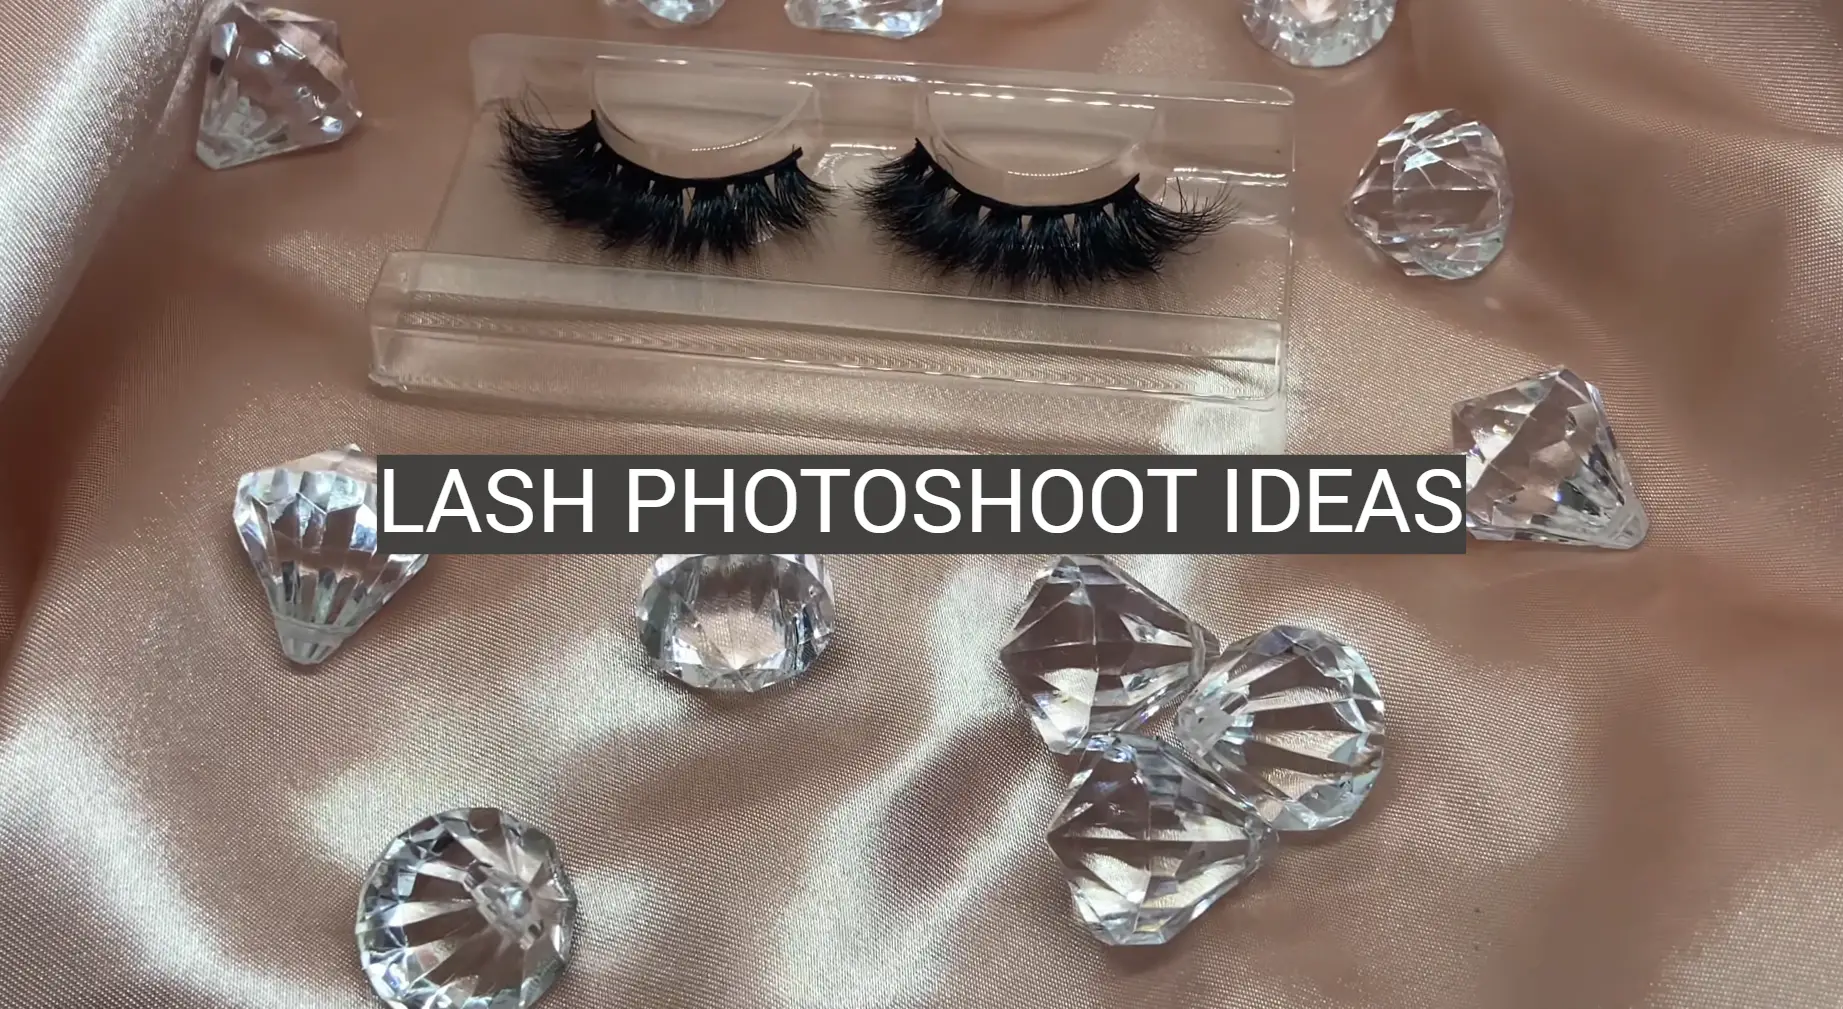 Lash Photoshoot Ideas